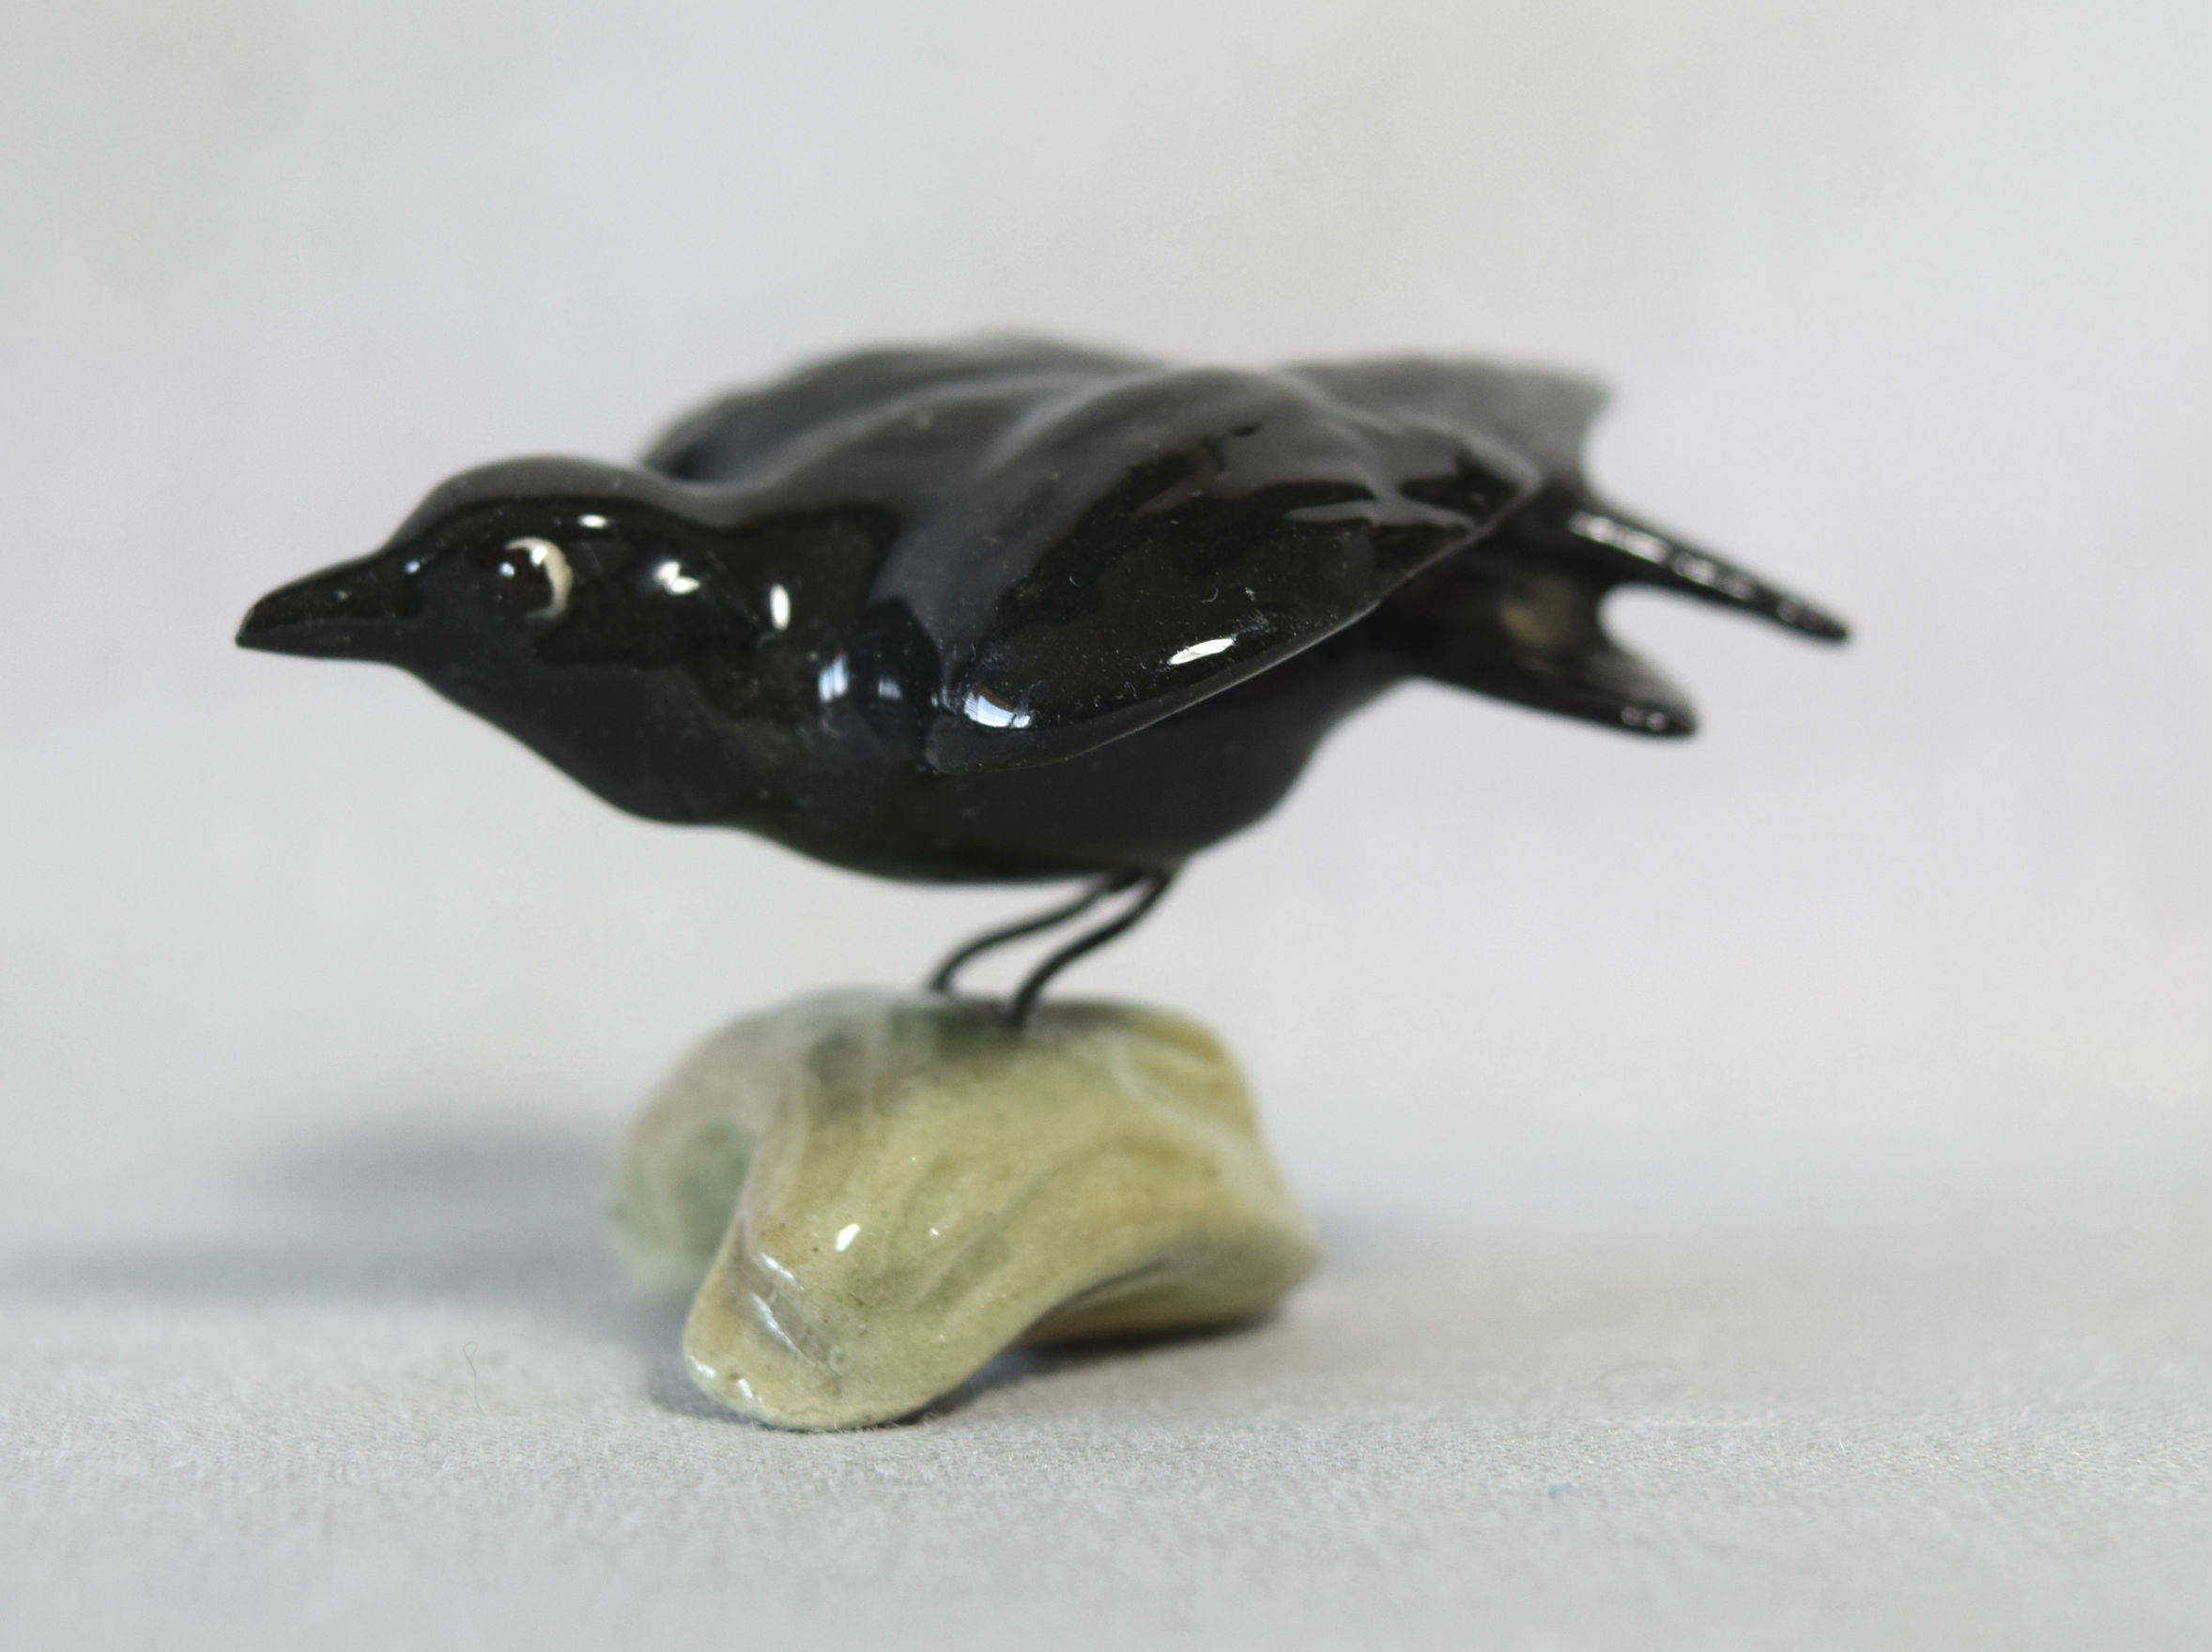 Crow/Bluebird, raised wings main image